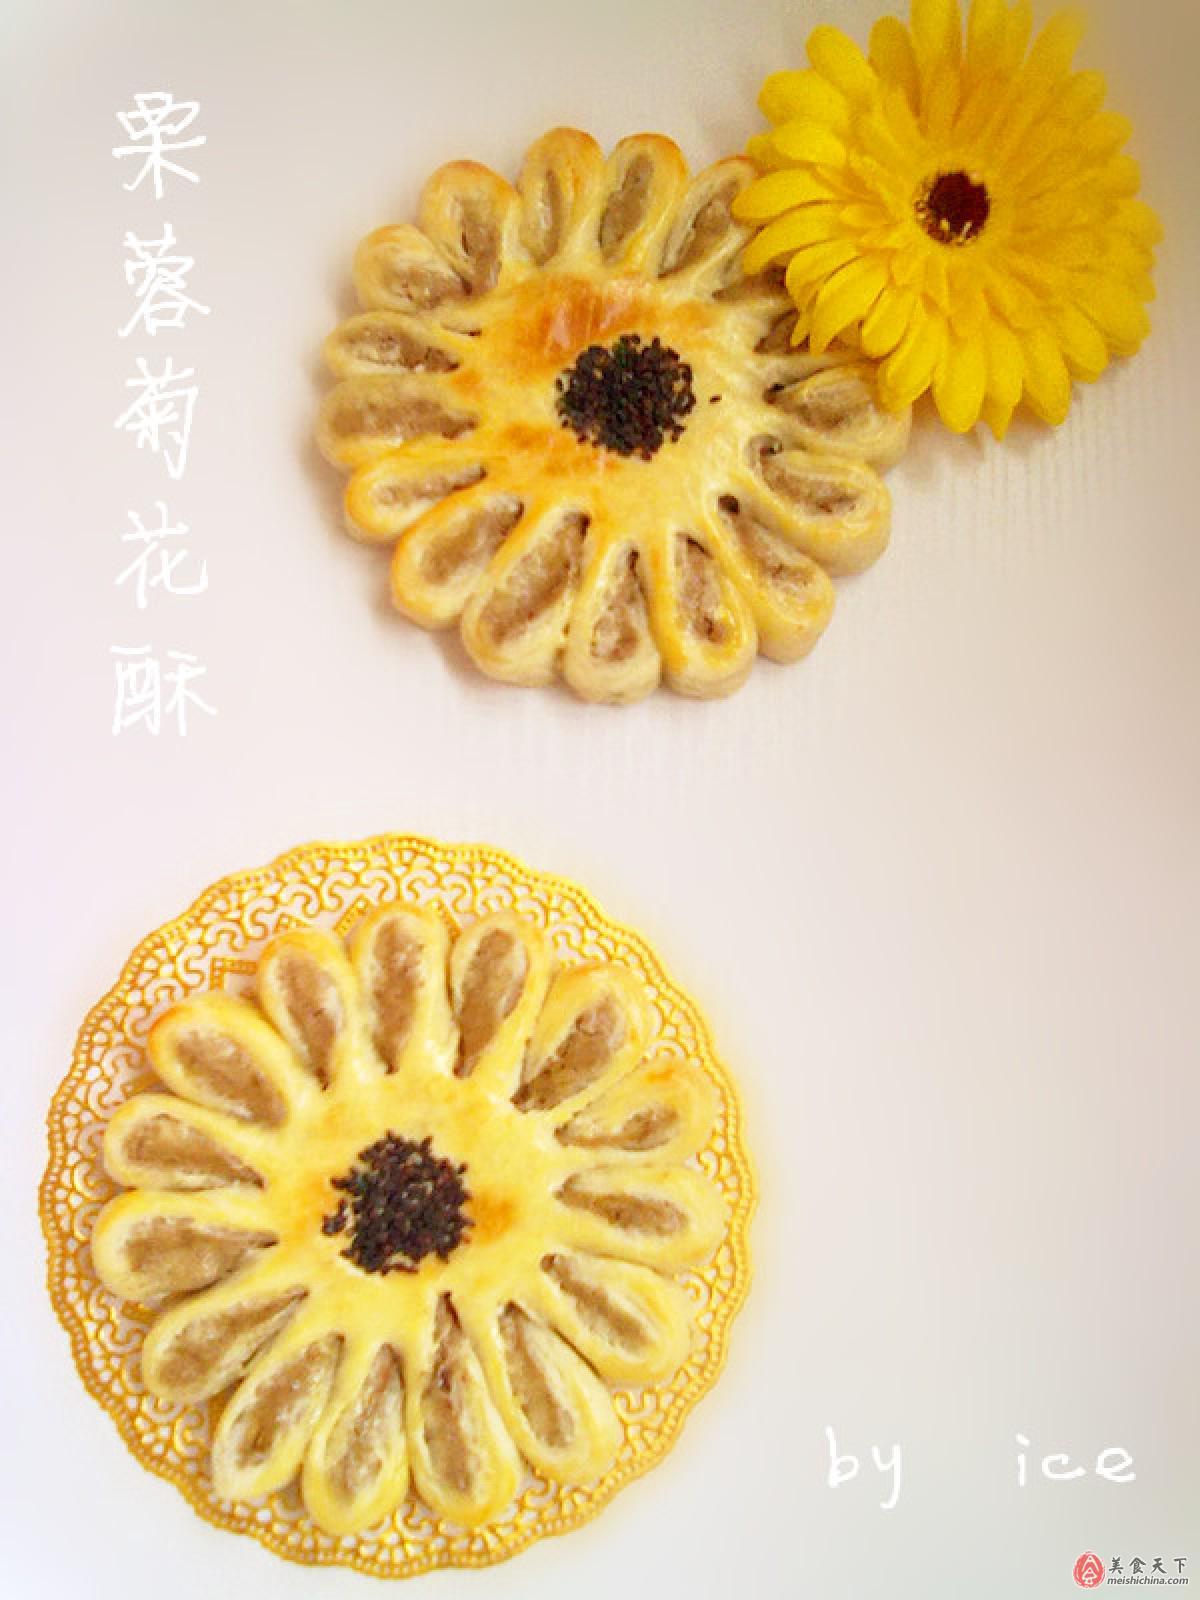 菊花酥-名特食品图谱-图片